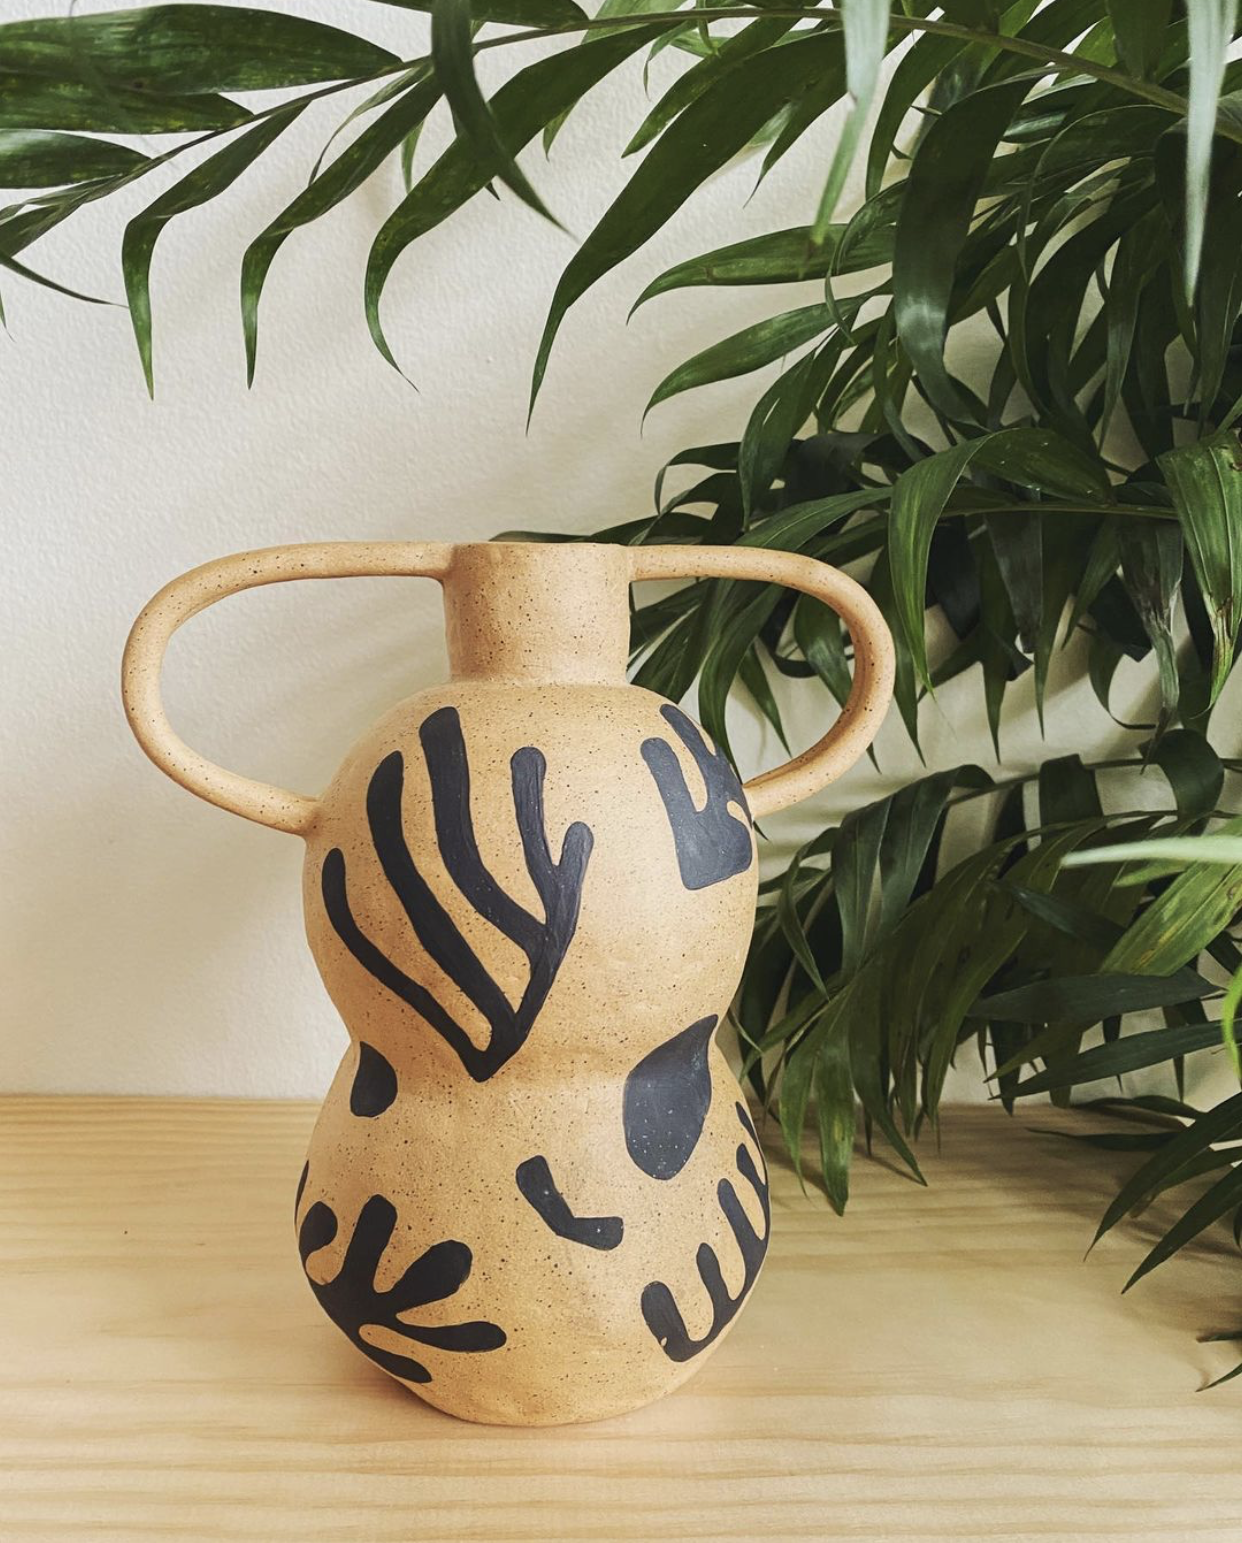 Sam Dodie Studio Ceramic Vase with squiggles - Seattle, WA